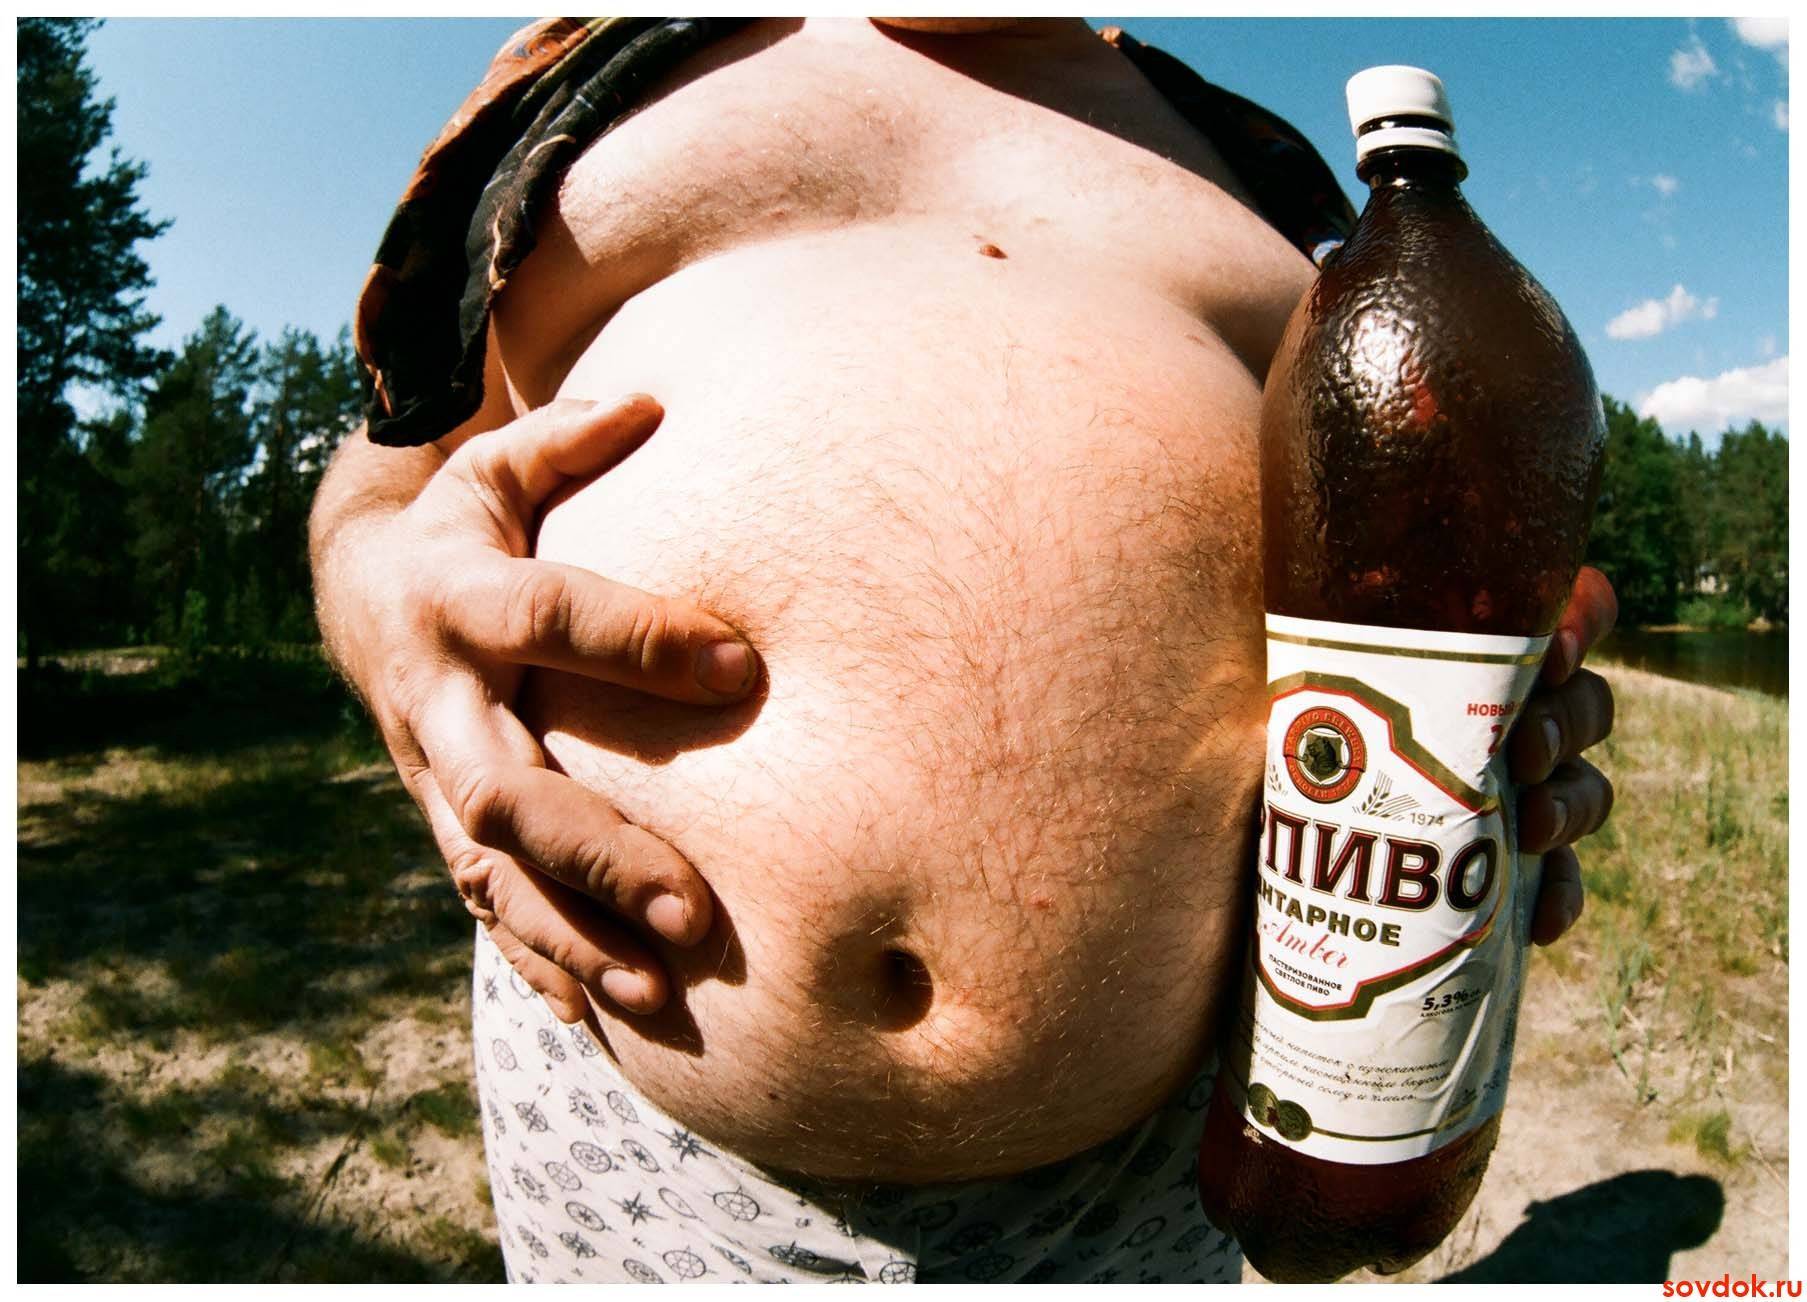 Безалкогольное пиво: польза и вред, состав, противопоказания к употреблению